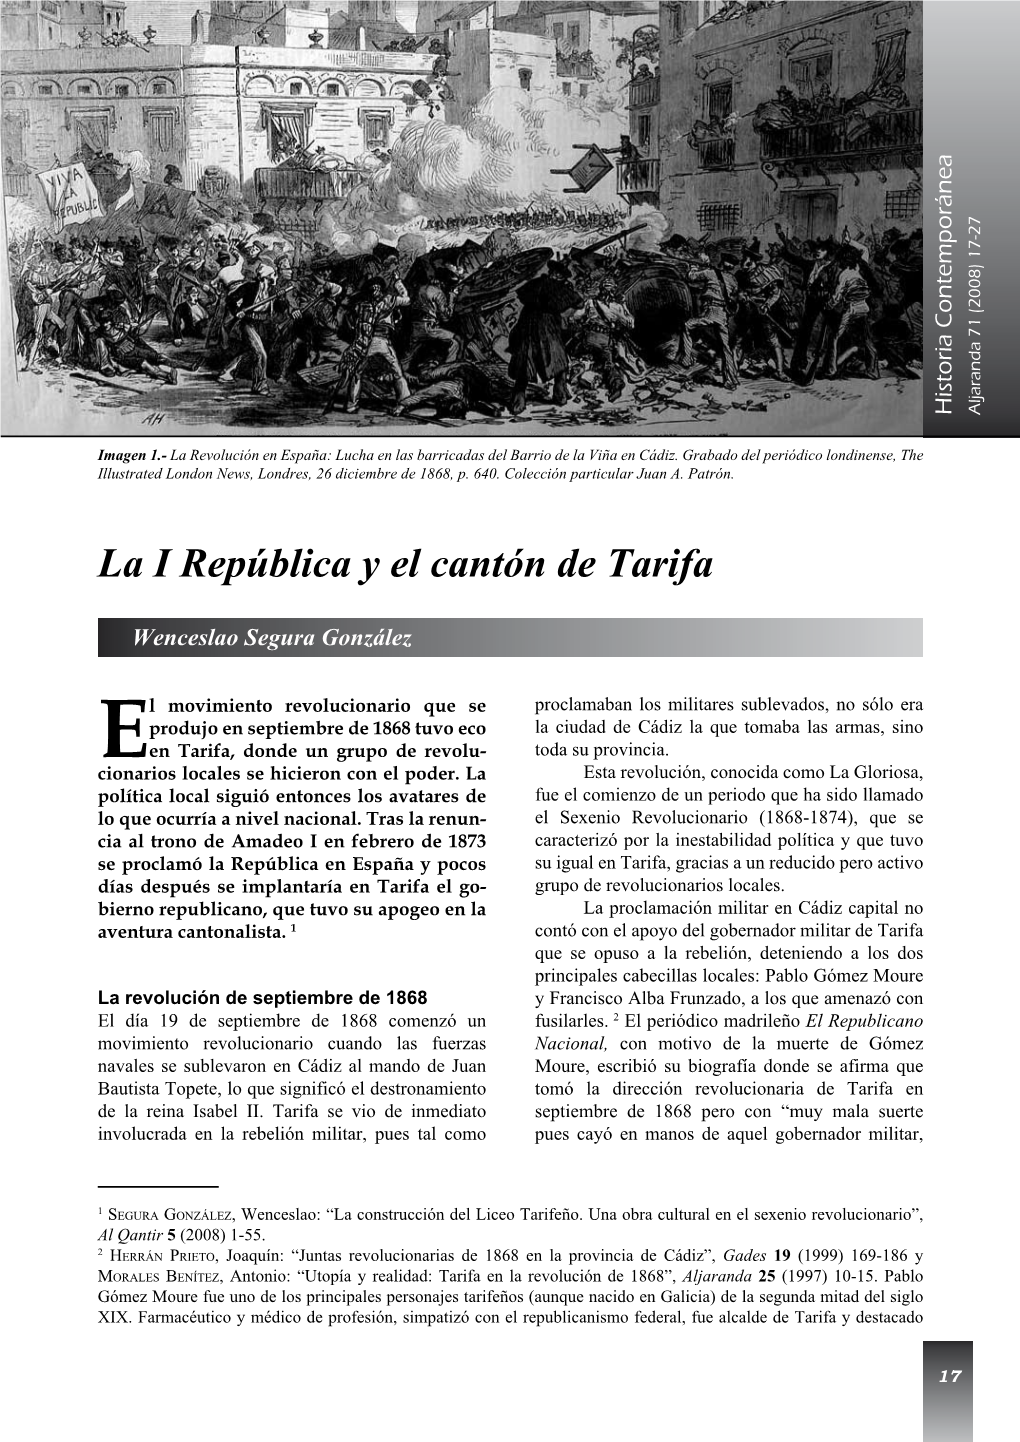 La I República Y El Cantón De Tarifa